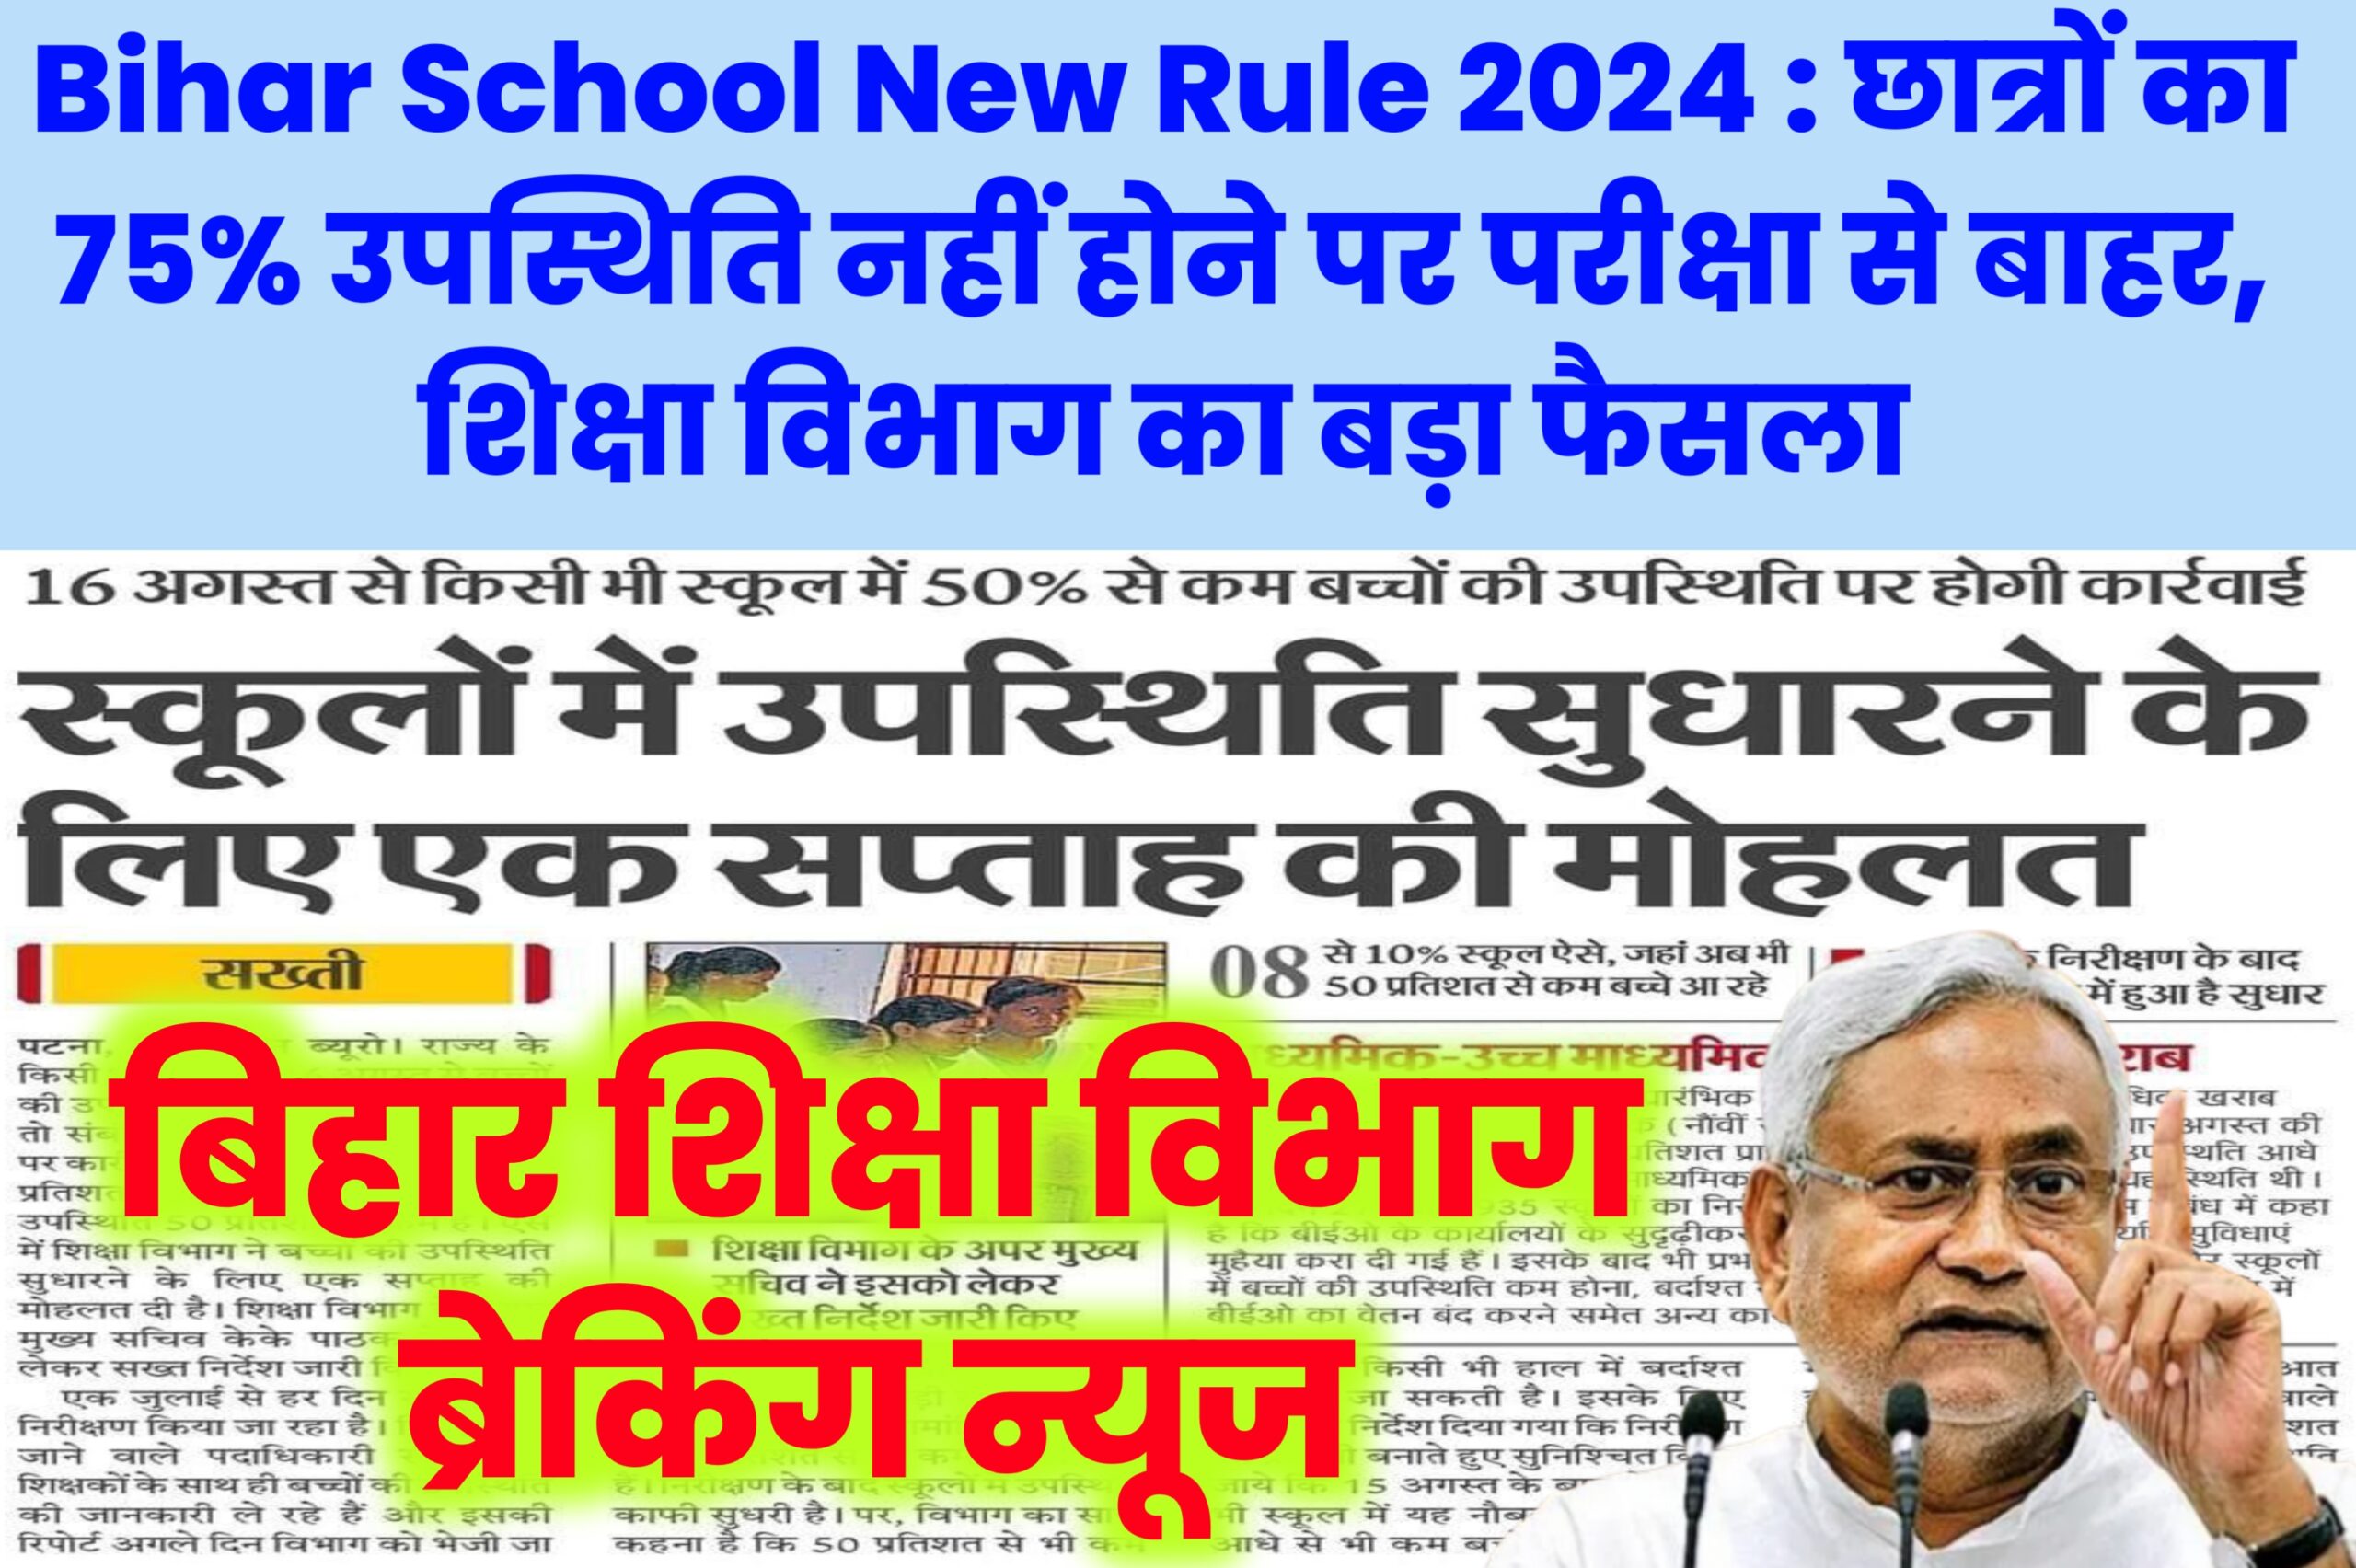 Bihar School New Rule 2024 : छात्रों का 75% उपस्थिति नहीं होने पर परीक्षा से बाहर, शिक्षा विभाग का बड़ा फैसला